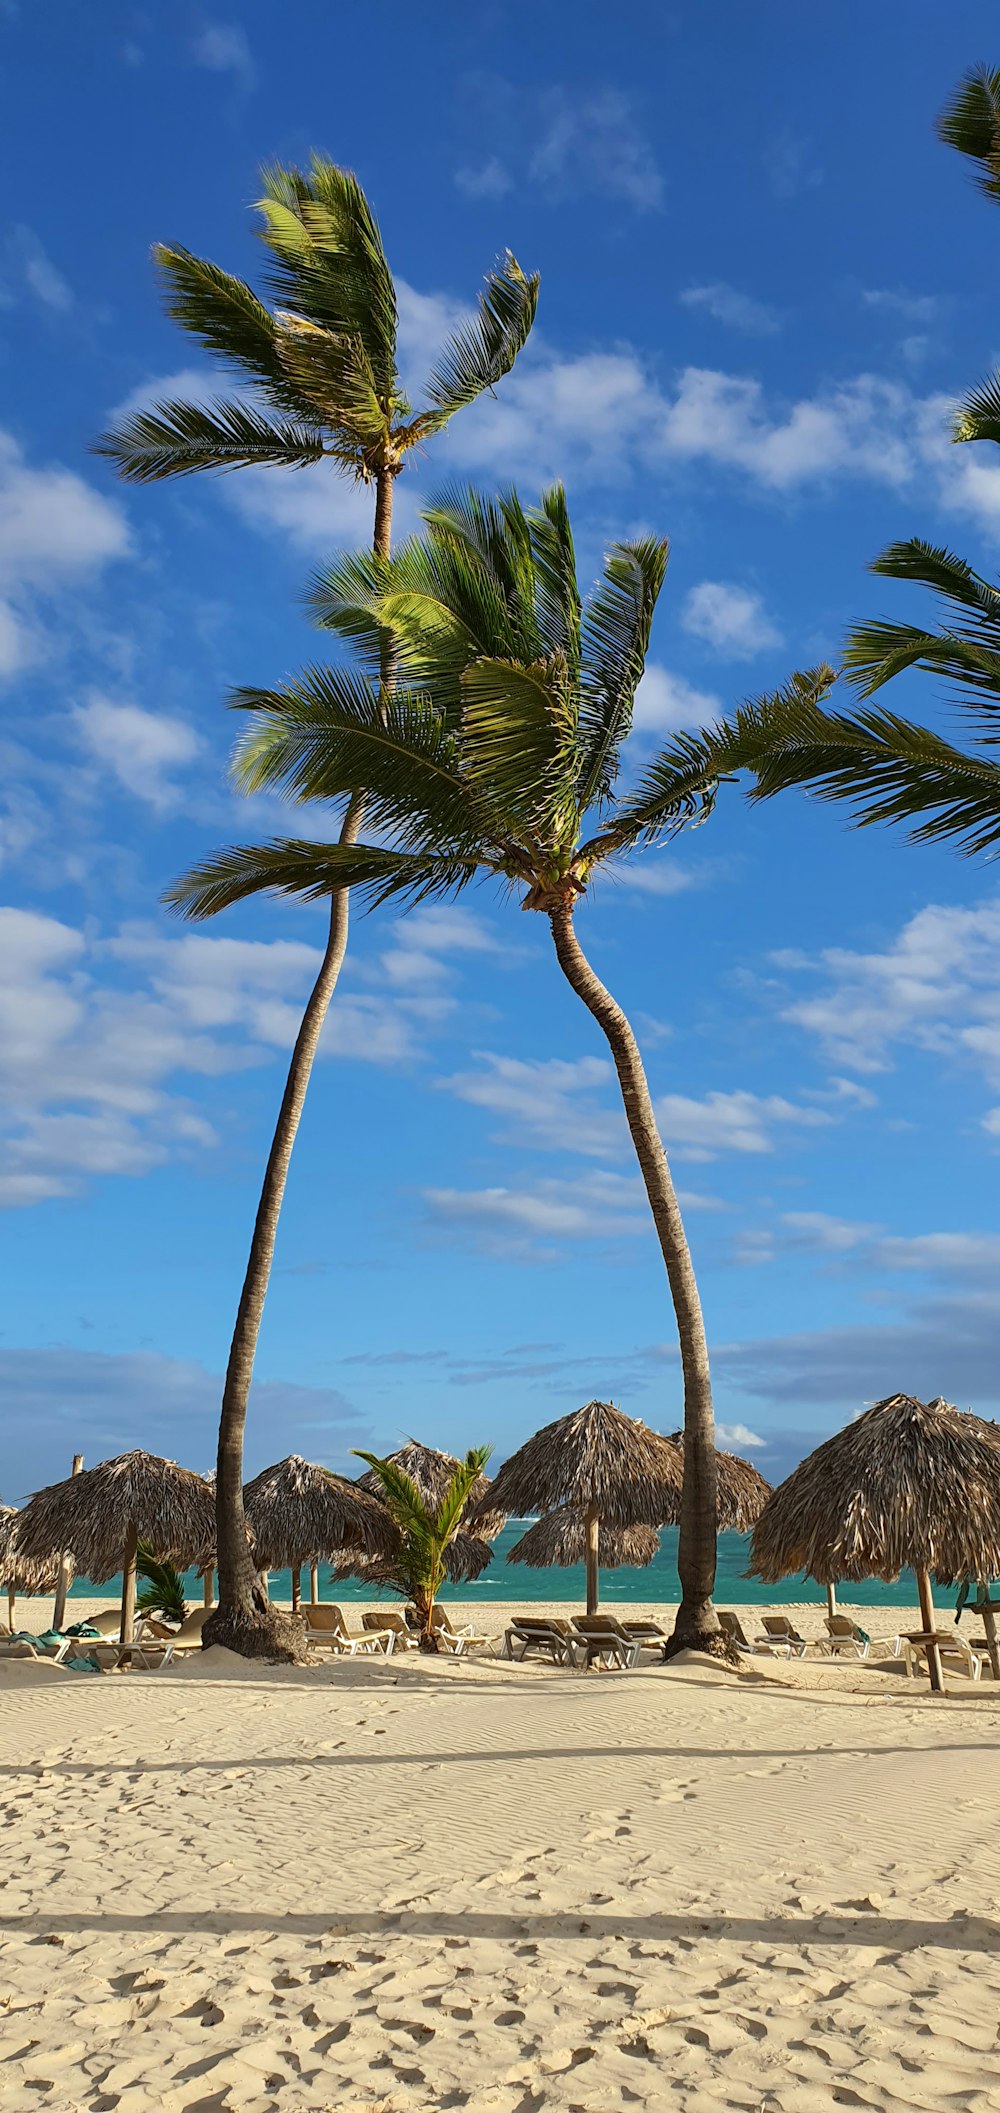 uma praia de areia com palmeiras e guarda-sóis de palha